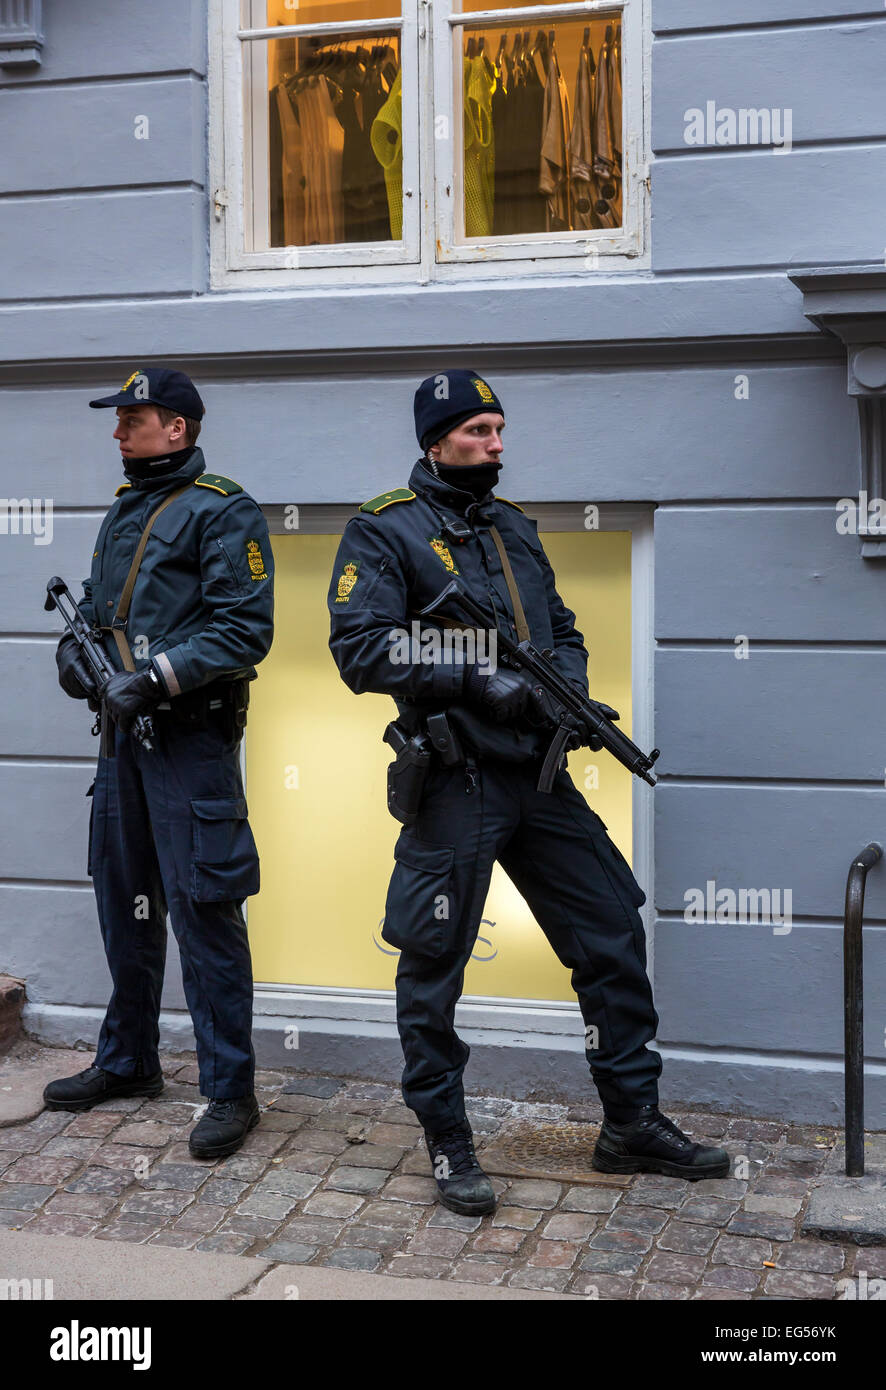 Deux policiers au cours de l'attaque terroriste de Copenhague en février 2015, copenhague, Danemark Banque D'Images